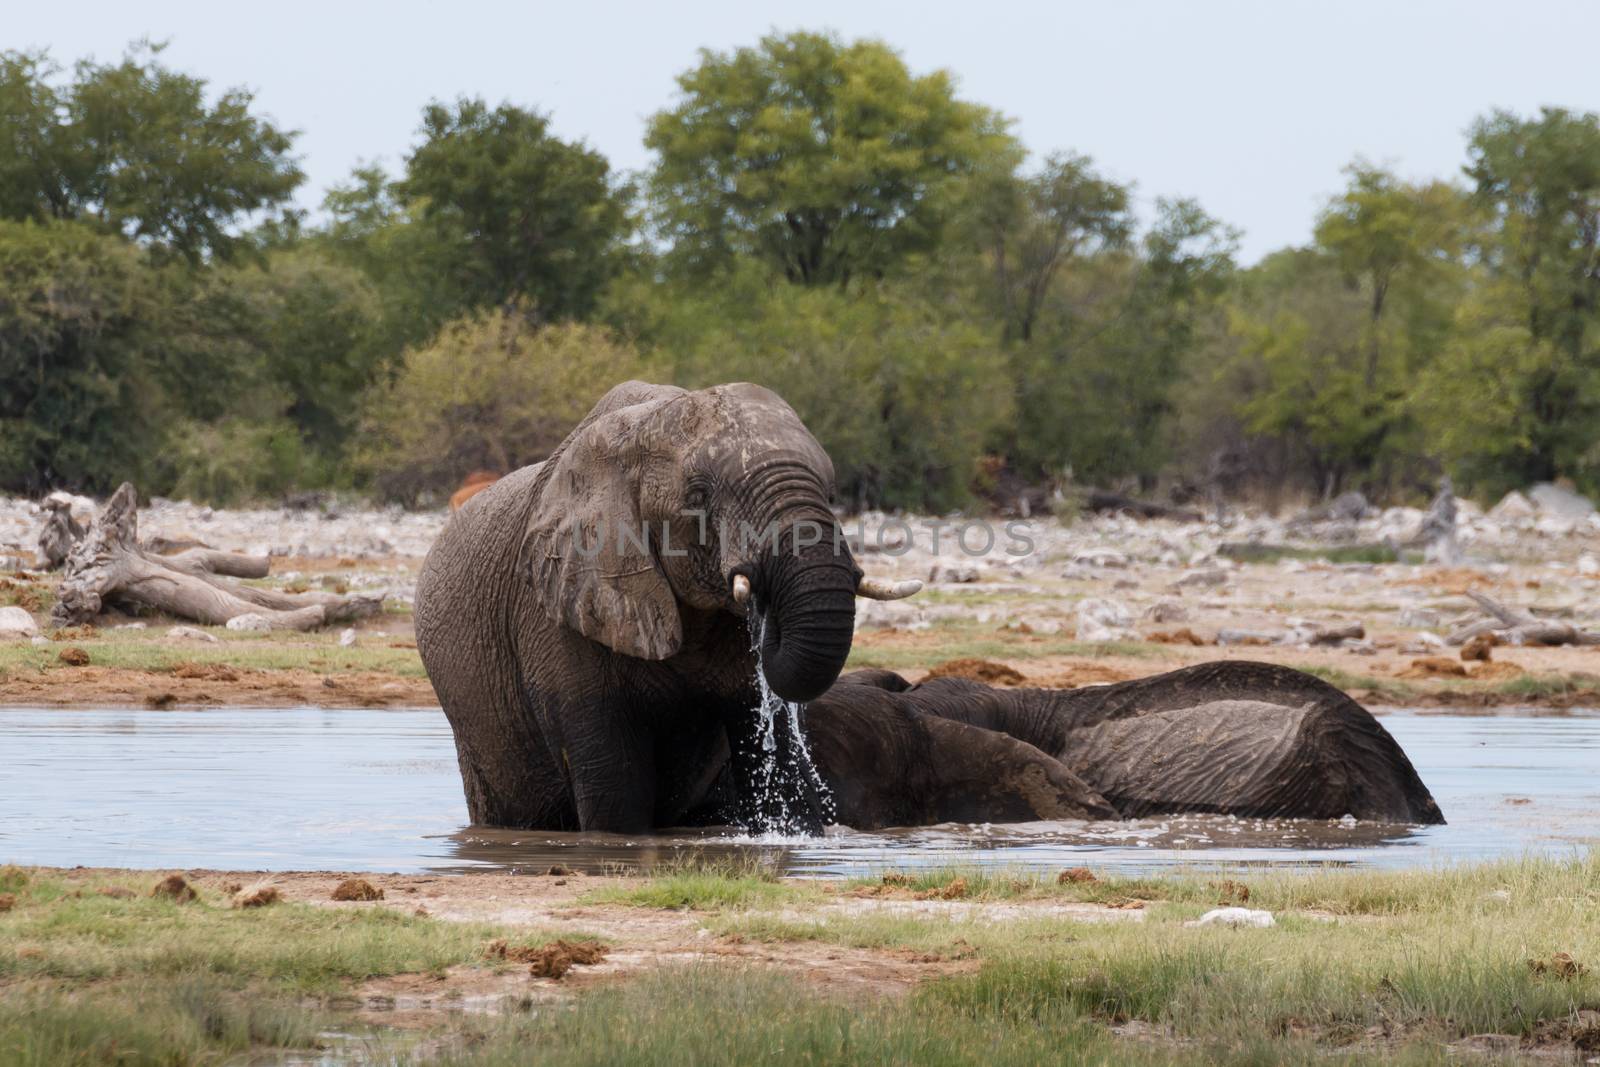 Couple of elephants playing from Etosha National Park, Namibia